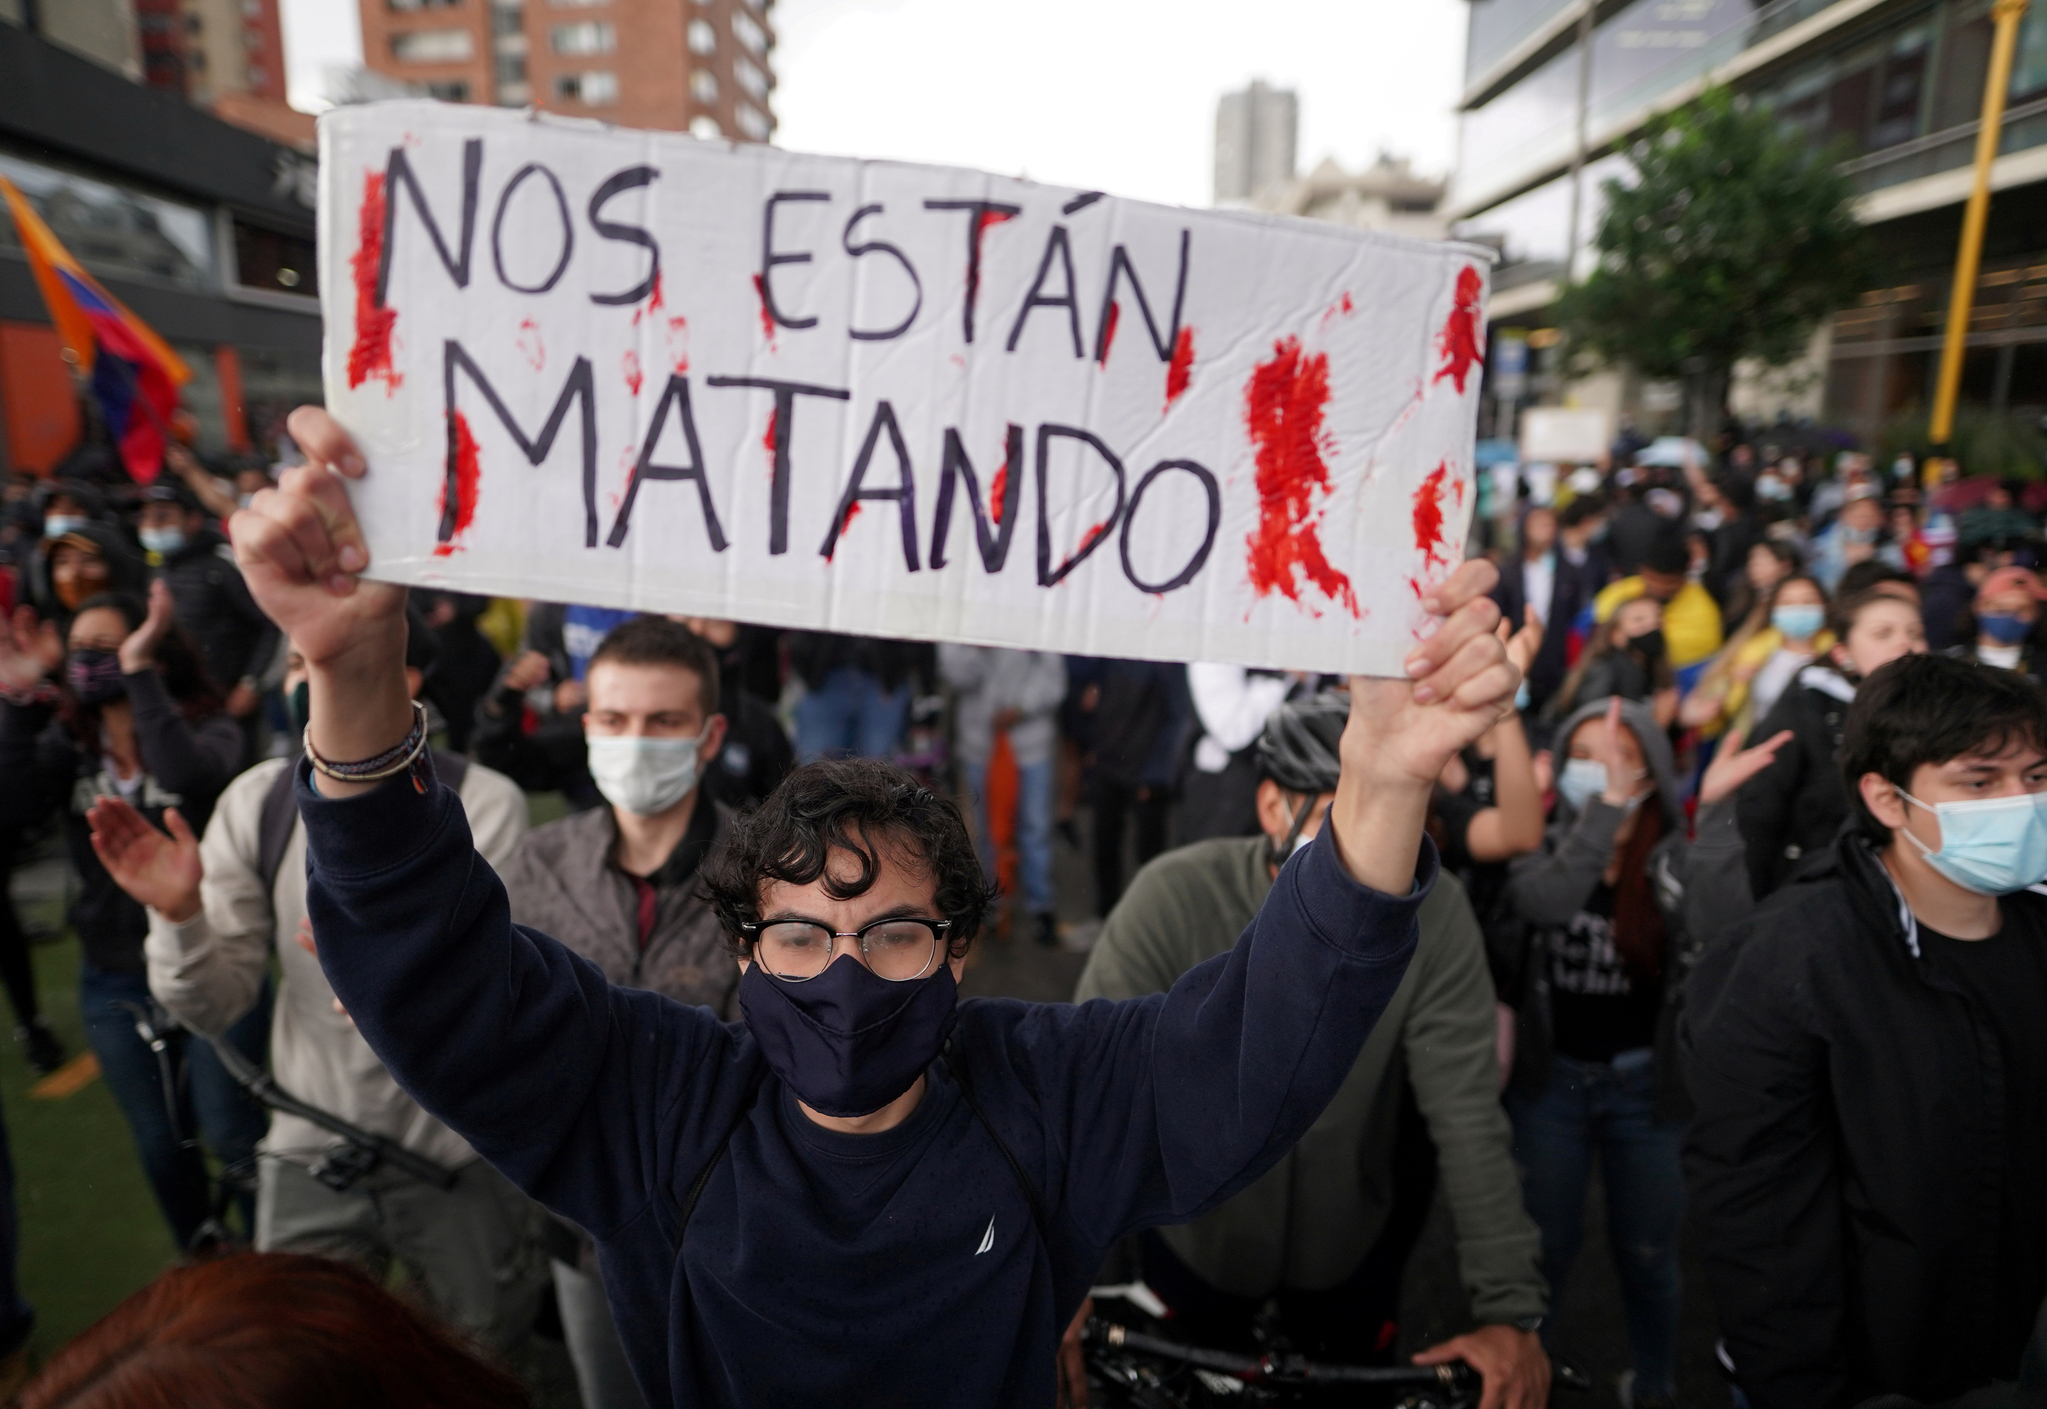 4일 콜롬비아 수도 보고타에서 열린 빈곤과 경찰 폭력에 항의하는 집회에 참석한 시민이 "그들은 우리를 죽이고 있다"는 피켓을 들고 있다. 로이터=연합뉴스